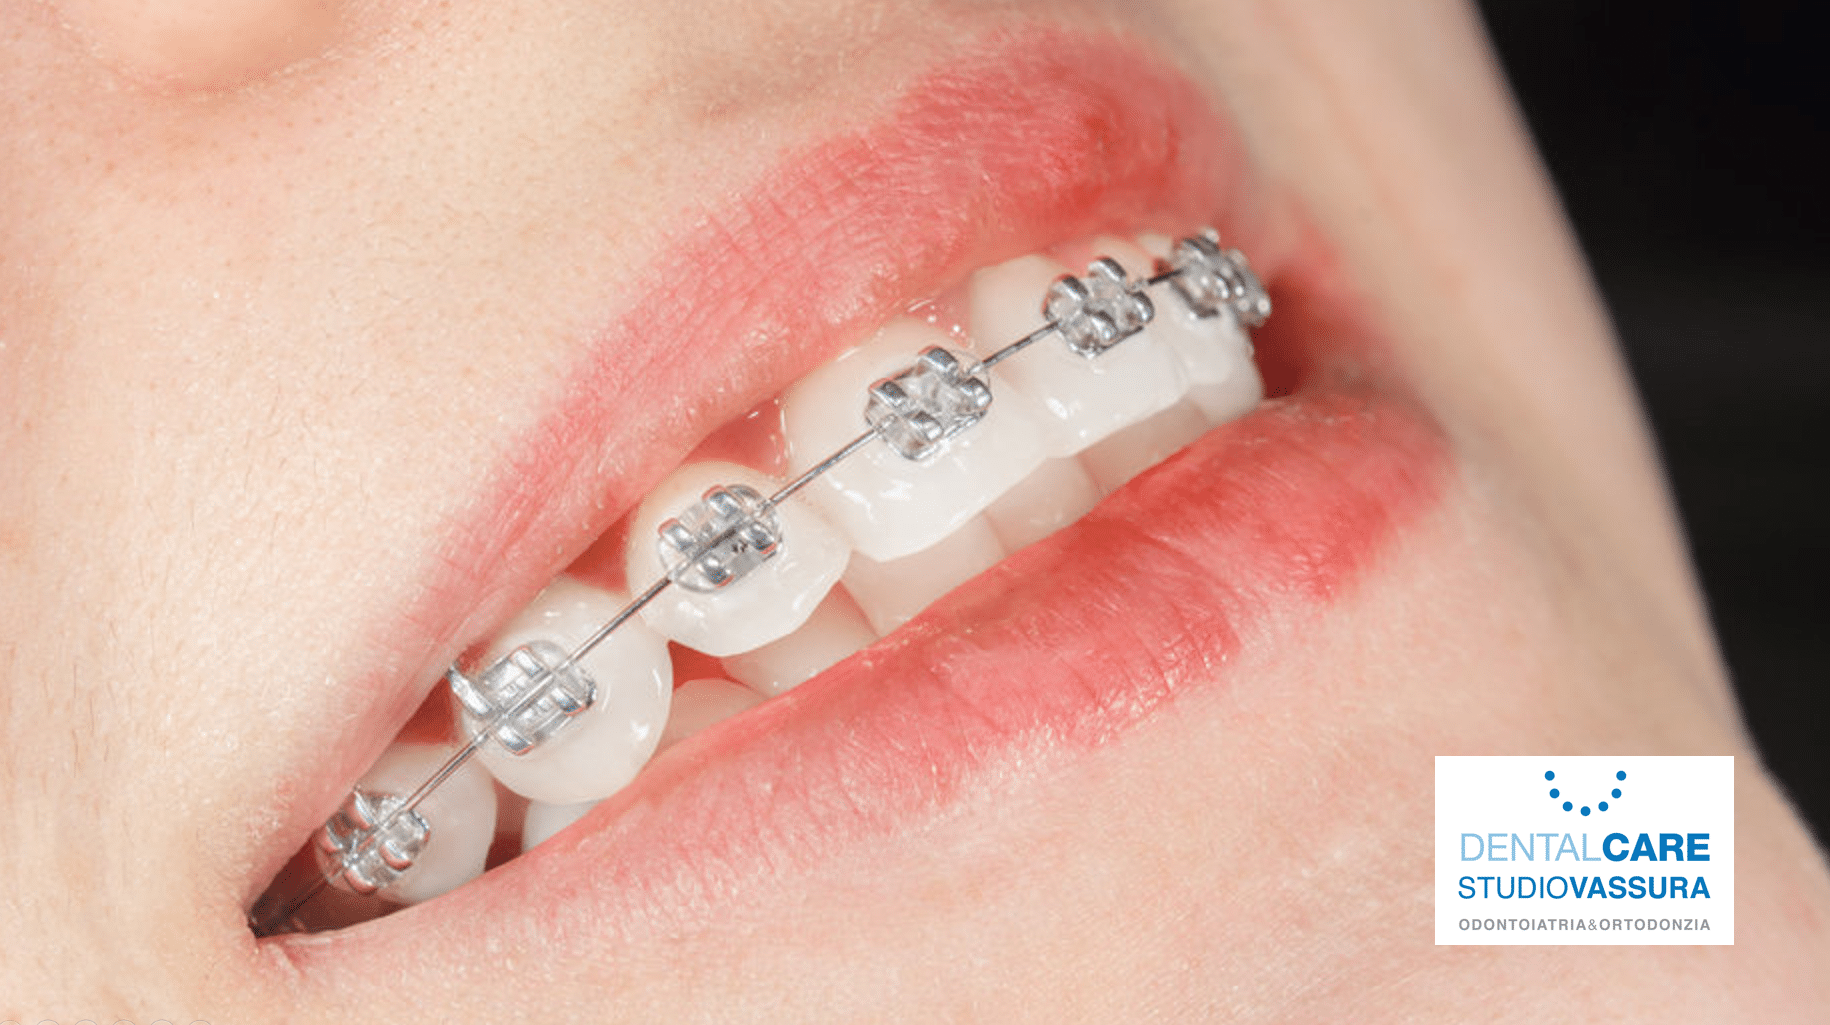 apparecchio ortodontico metallico